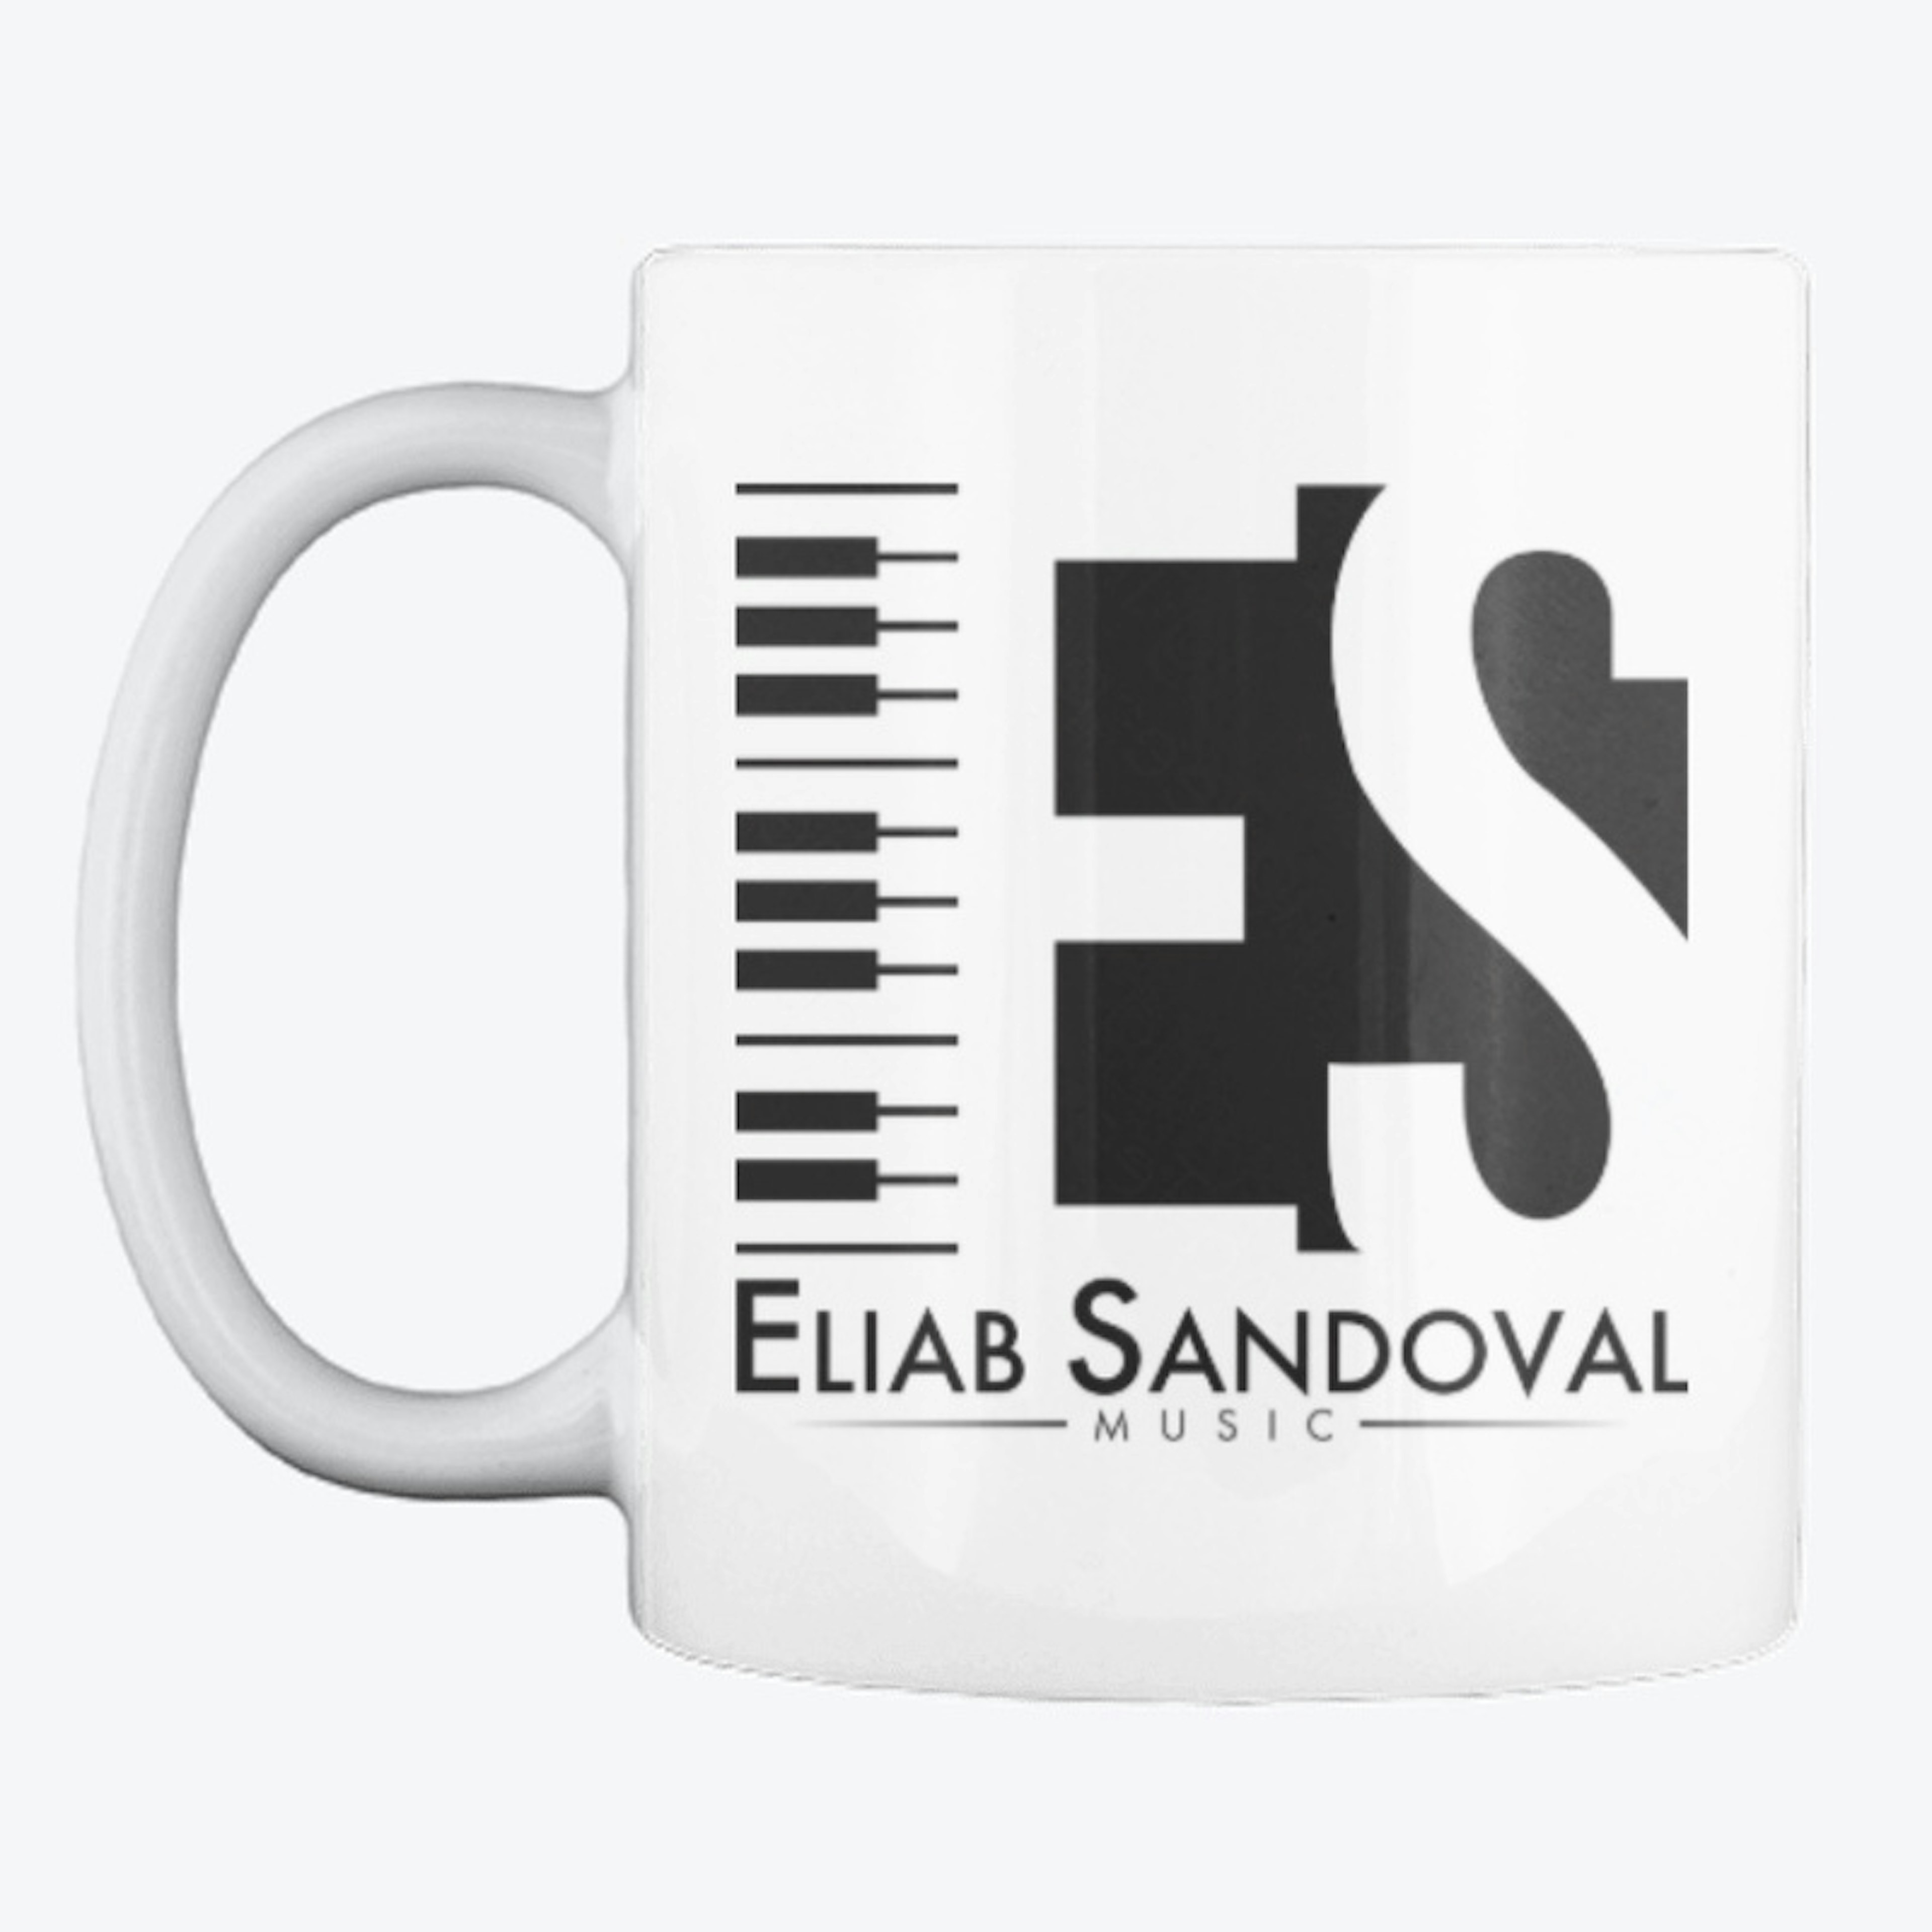 Eliab Sandoval Music Mug! 